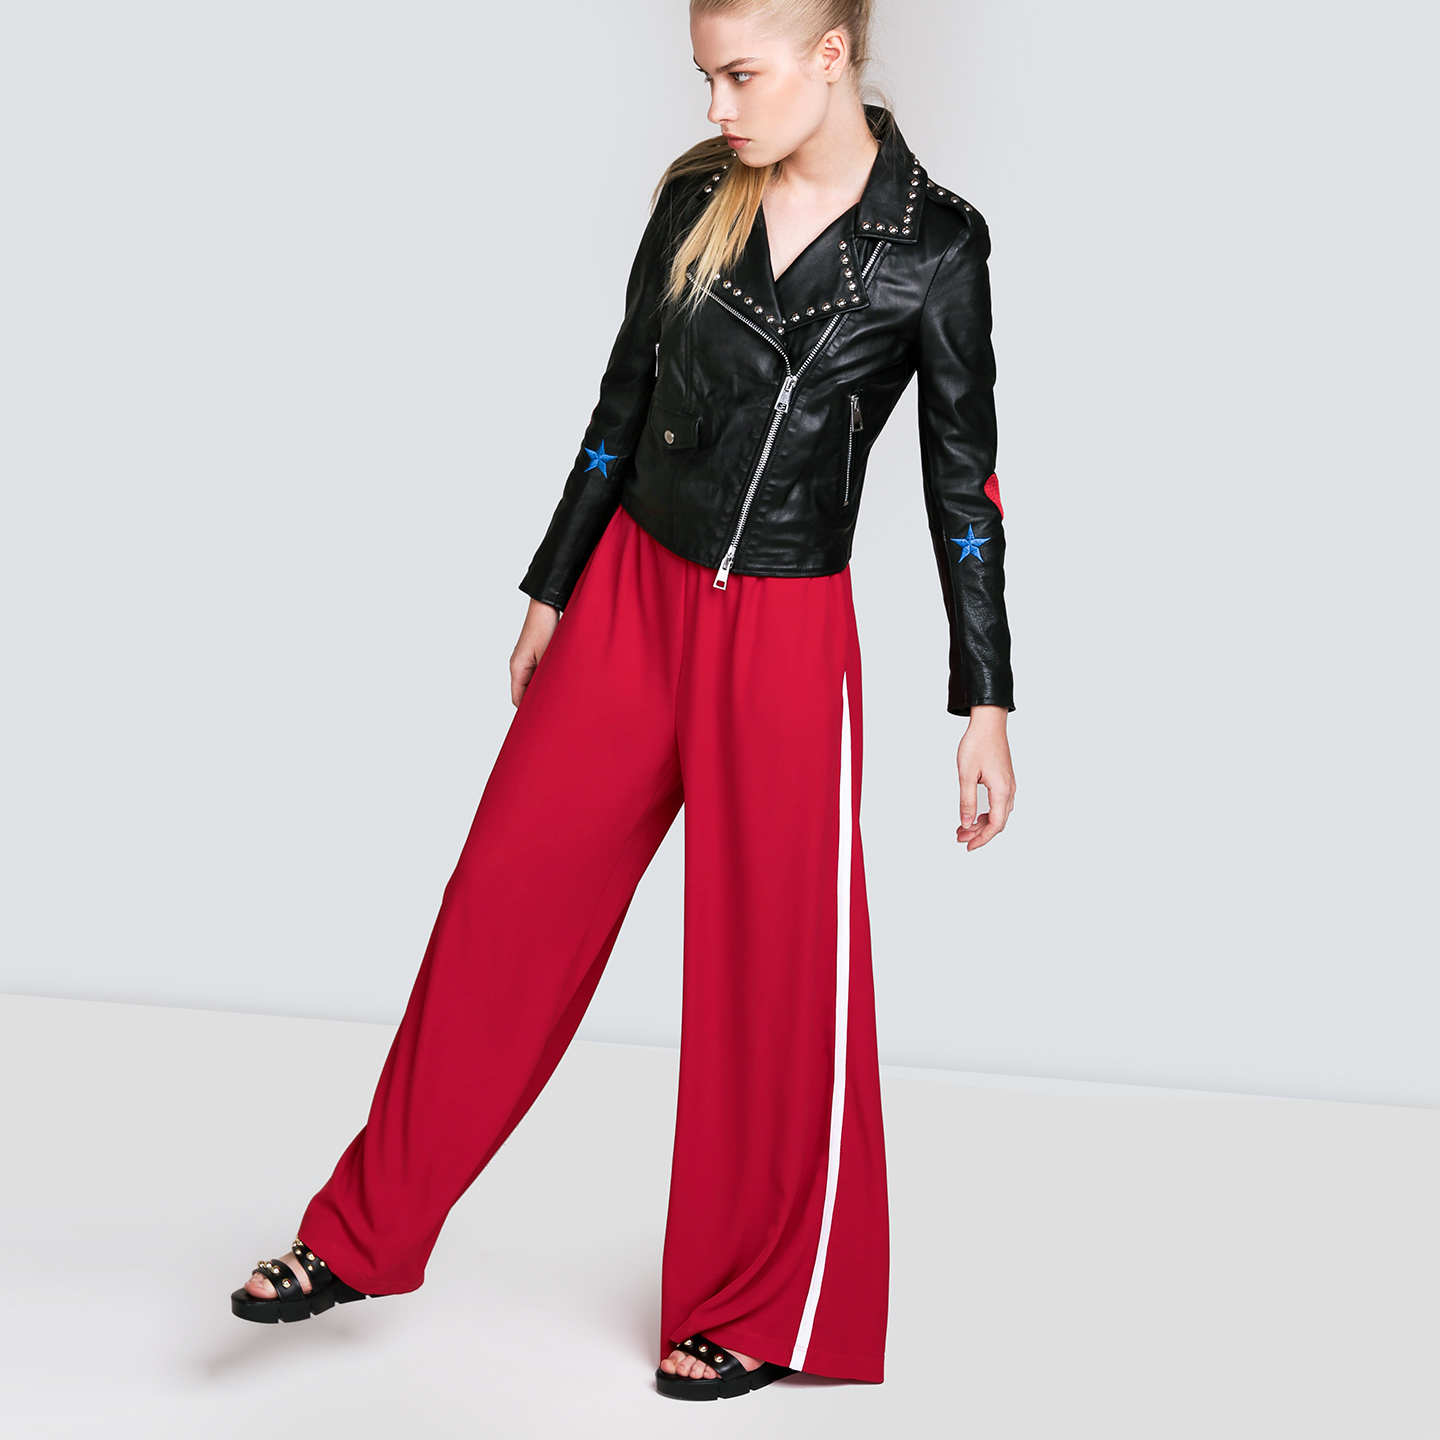 Красные широкие штаны с лампасами – Италия, красного цвета, полиэстер.Купить в интернет-магазине в Москве. Цена 5180 руб.